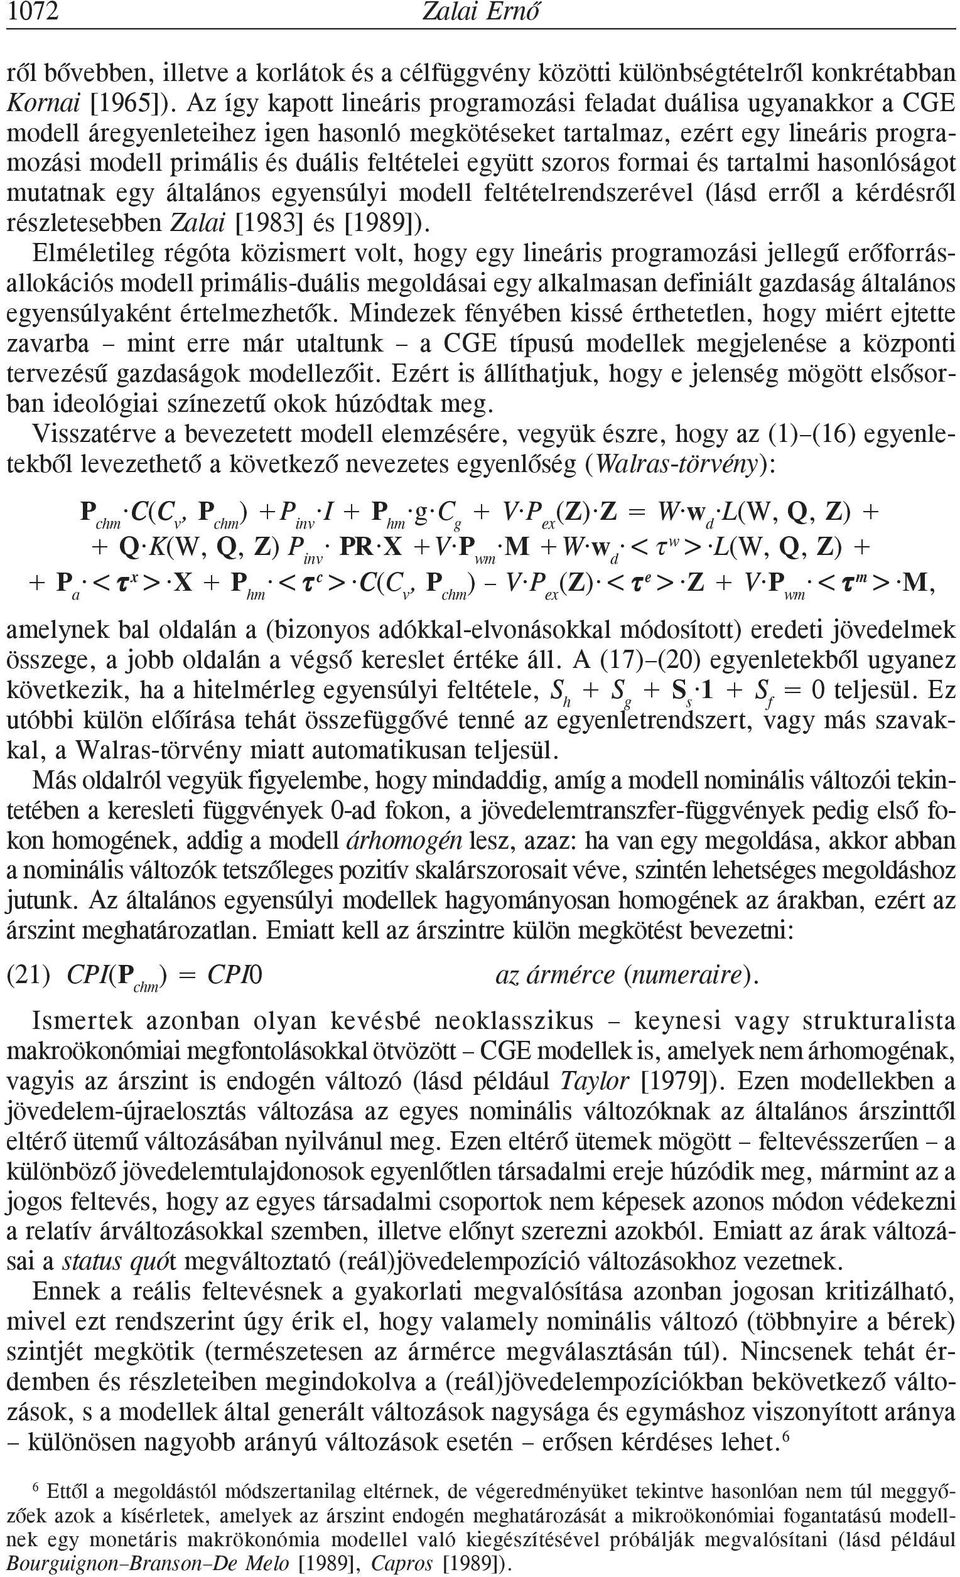 együtt szoros formai és tartalmi hasonlóságot mutatnak egy általános egyensúlyi modell feltételrendszerével (lásd errõl a kérdésrõl részletesebben Zalai [1983] és [1989]).